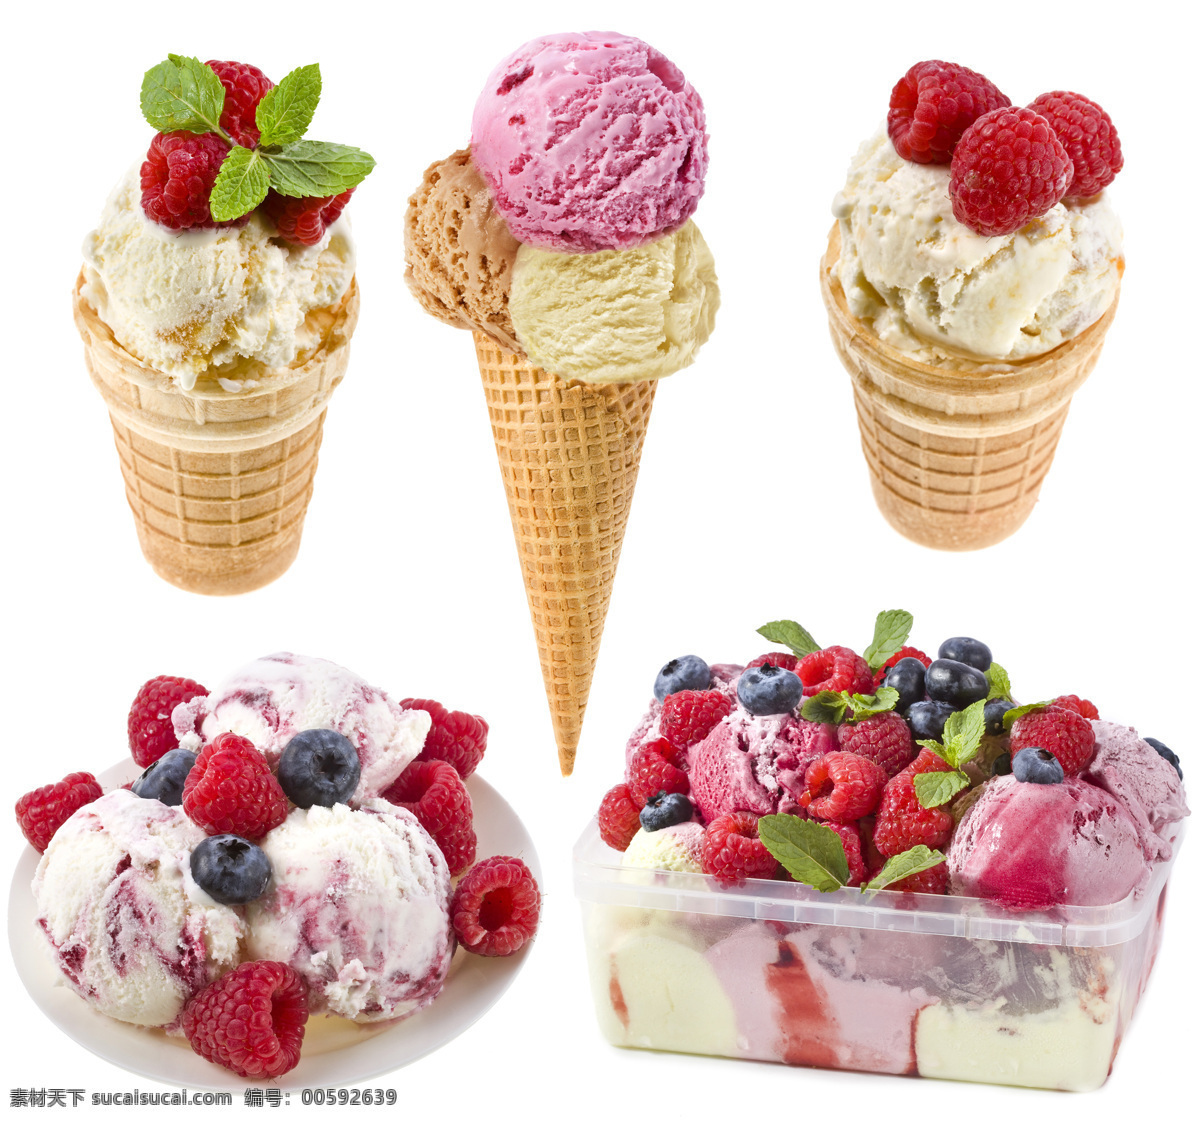 草莓冰激凌 草莓 甜点 水果 果篮 美食 食物 新鲜水果 餐饮美食 生活百科